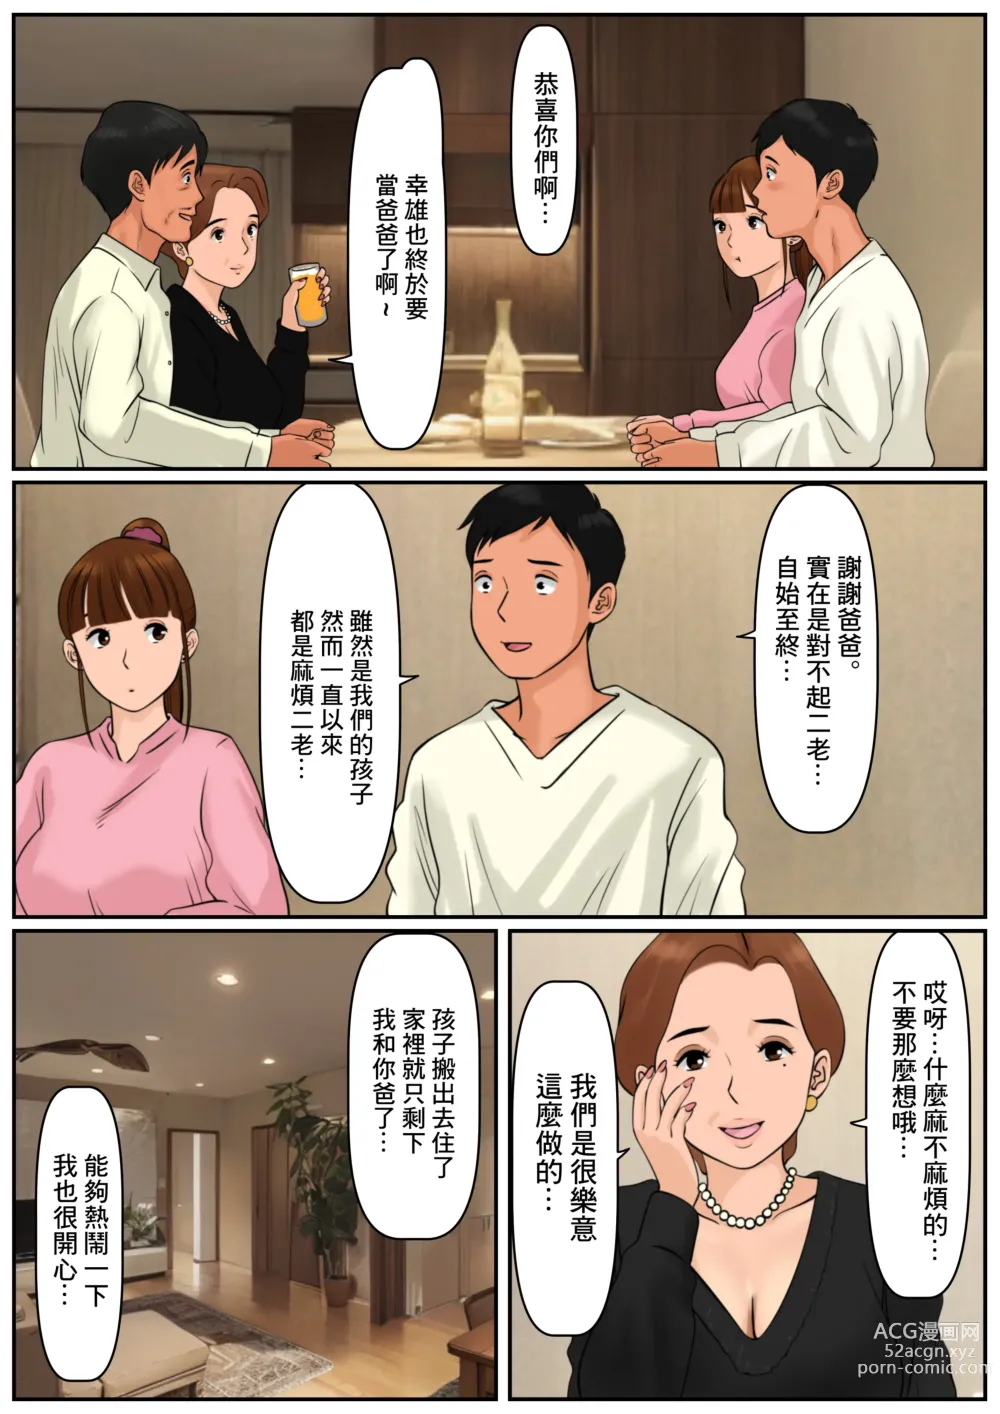 Page 4 of doujinshi 難道你是嫌棄我這個媽媽嗎?